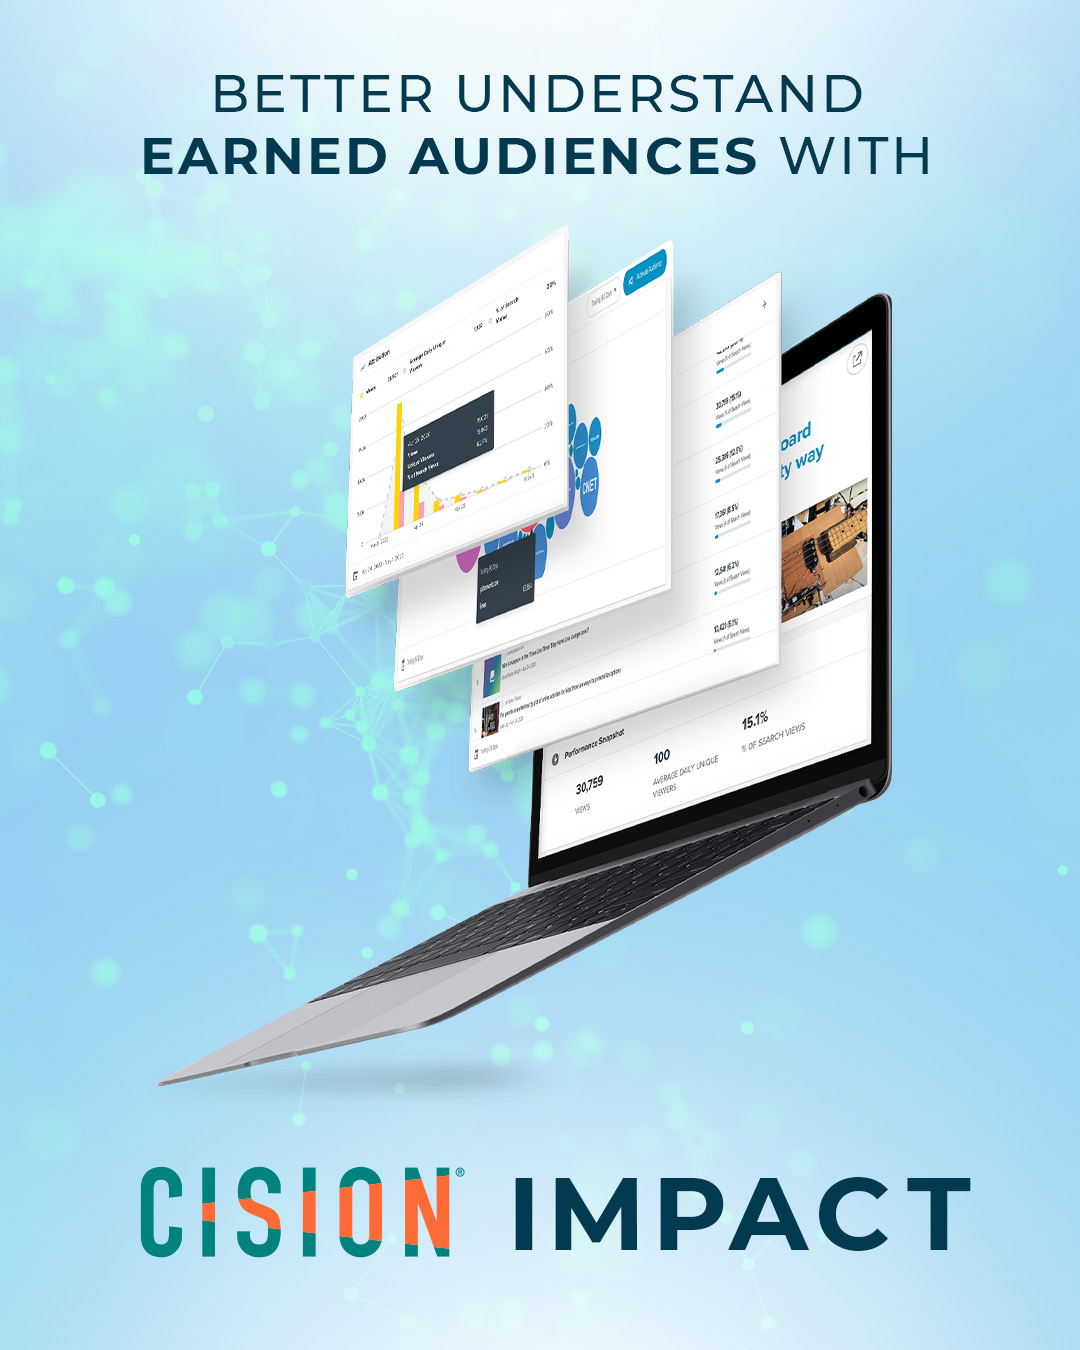 Cision เปิดตัวข้อมูลระดับบทความ ช่วยให้นักสื่อสารเข้าใจรูปแบบการรับ Earned Media ของผู้เสพสื่อ